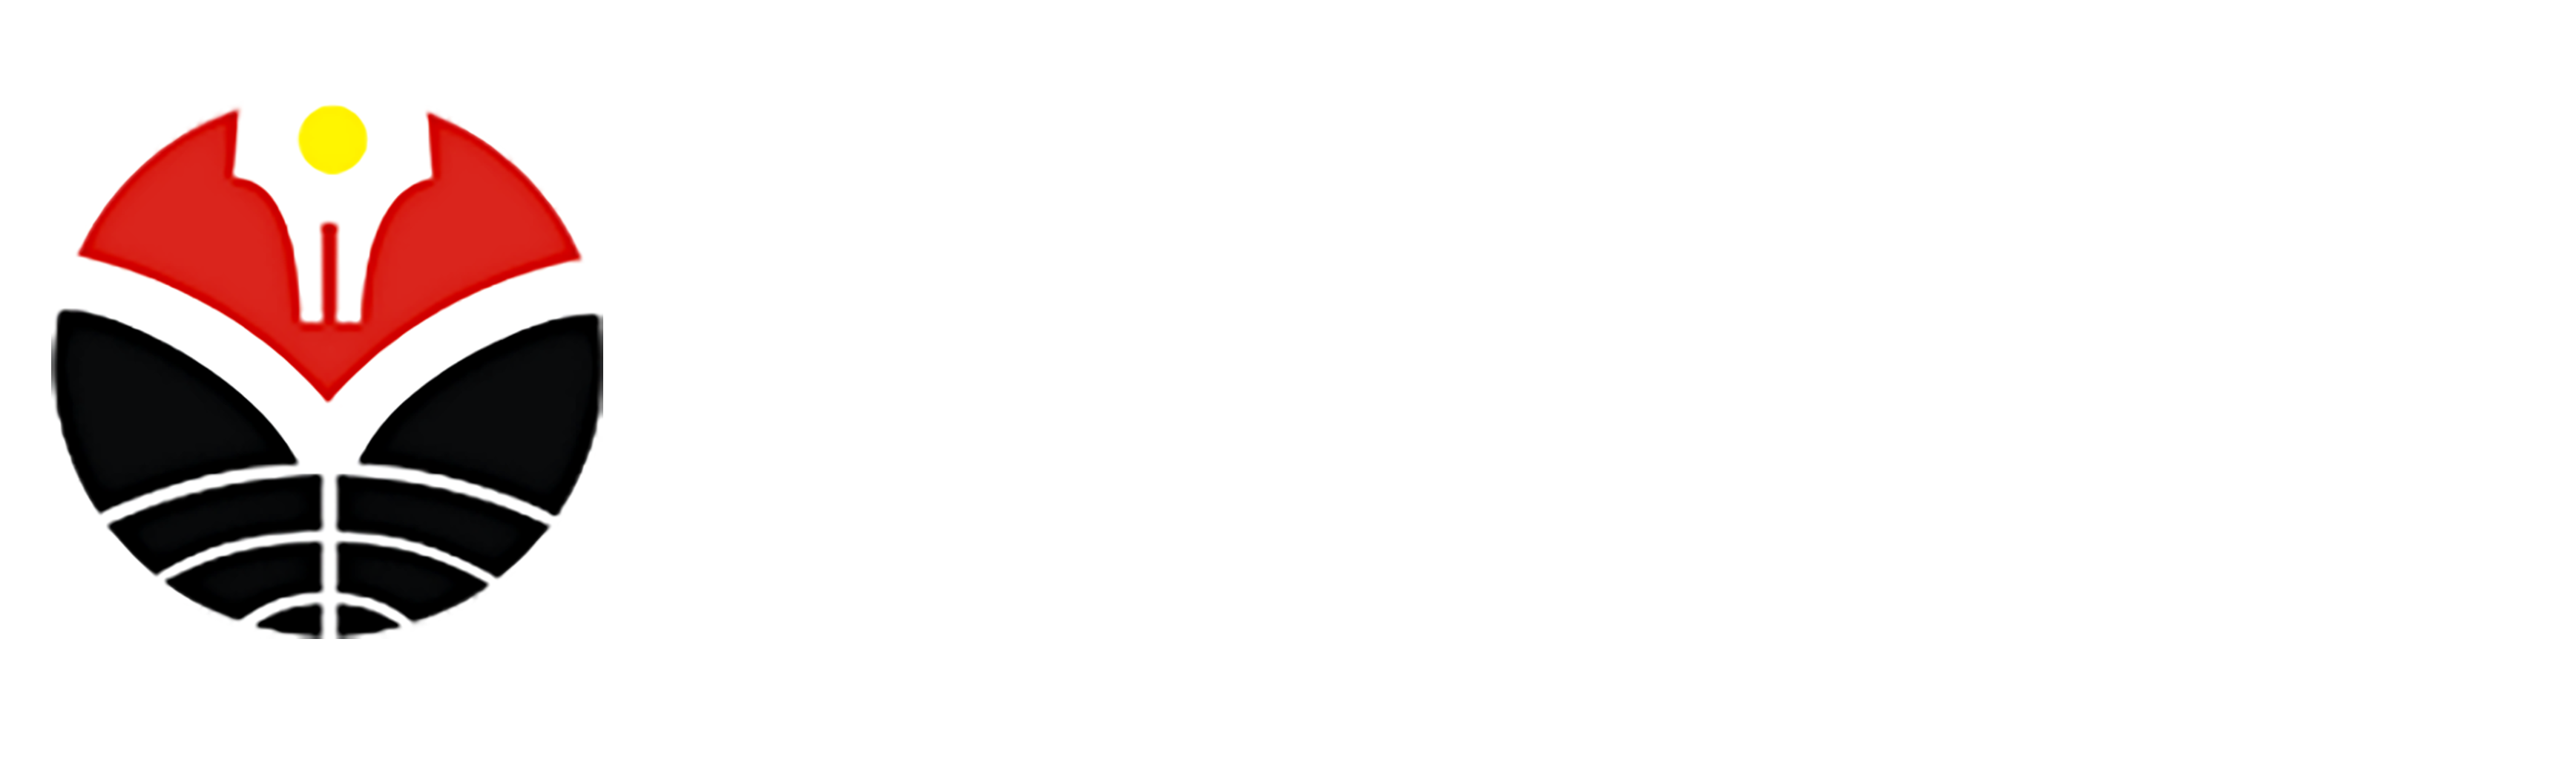 Program Studi Bahasa dan Sastra Indonesia